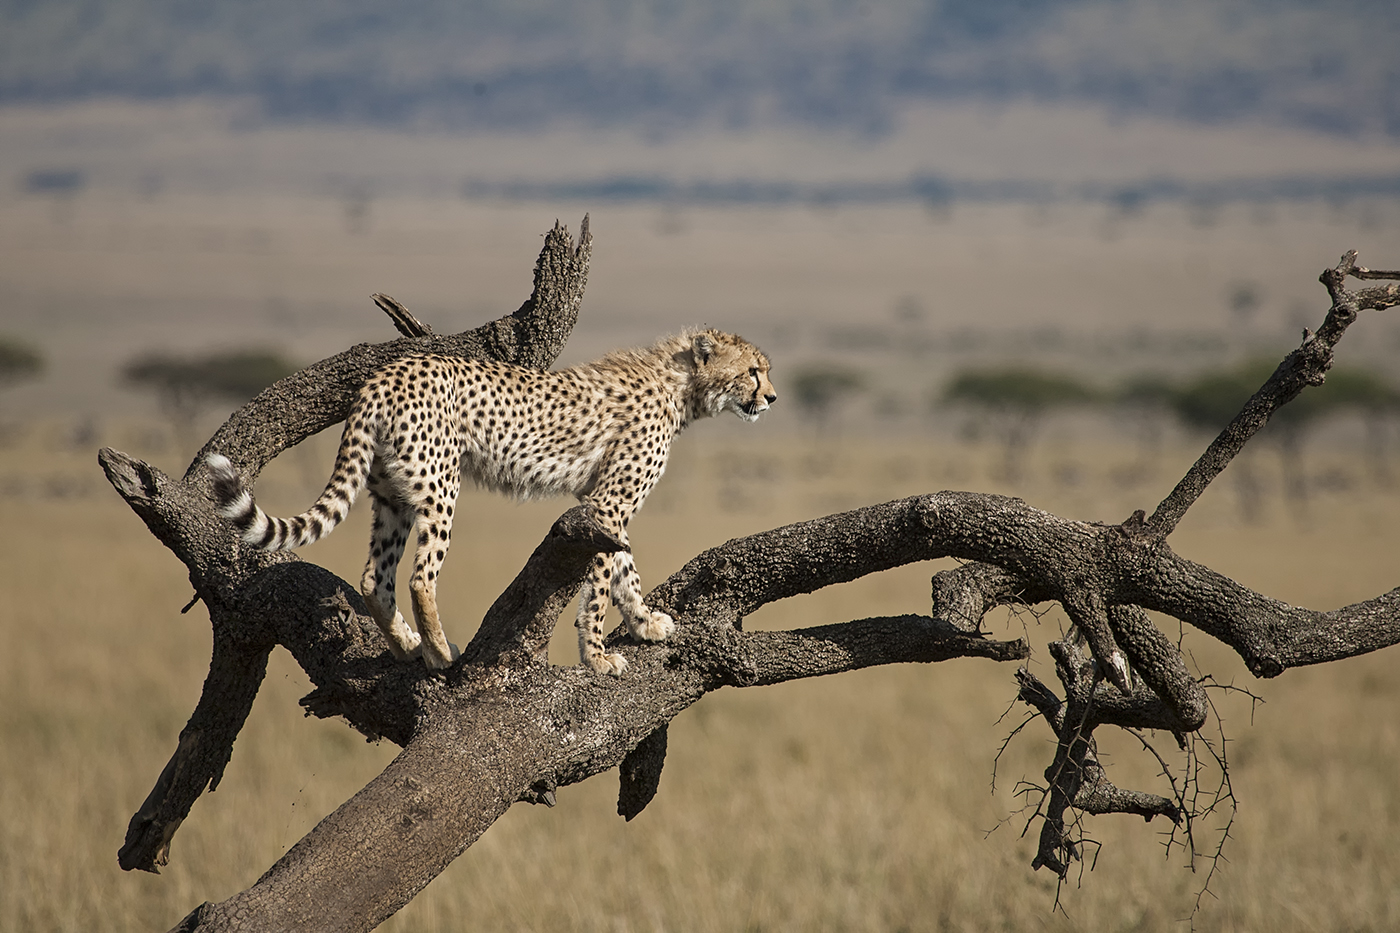 Cheetah on death tree...